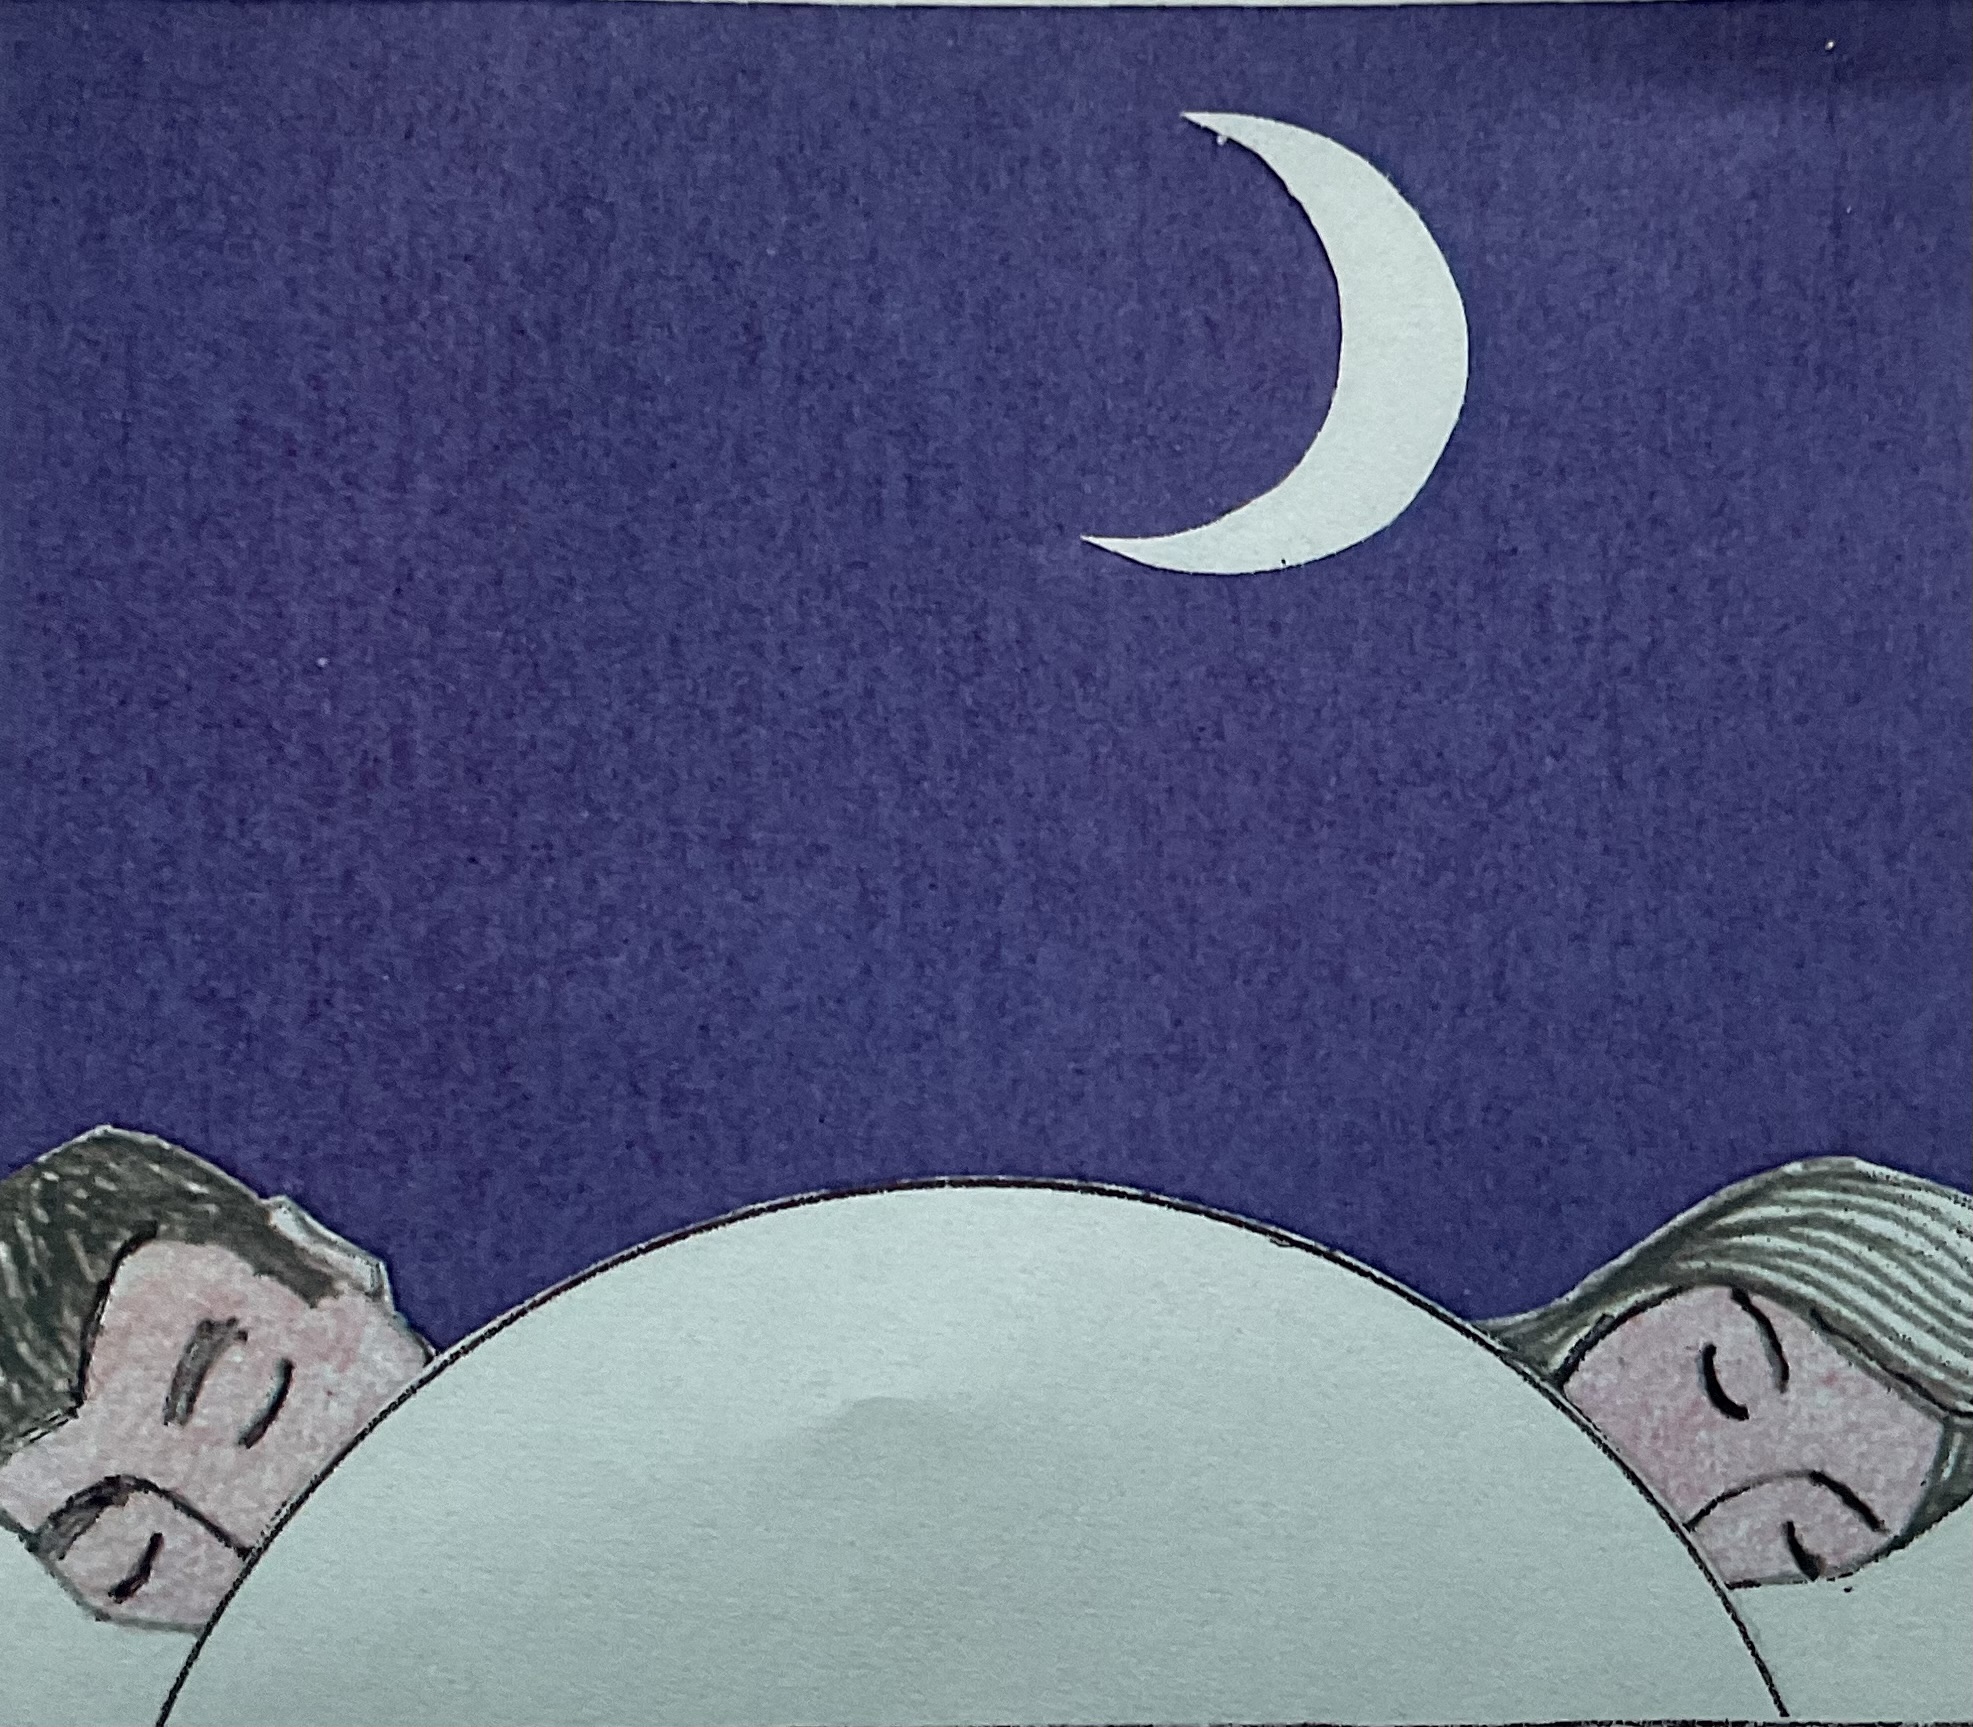 Mann und Frau, mit einem großen Mond, schlafend